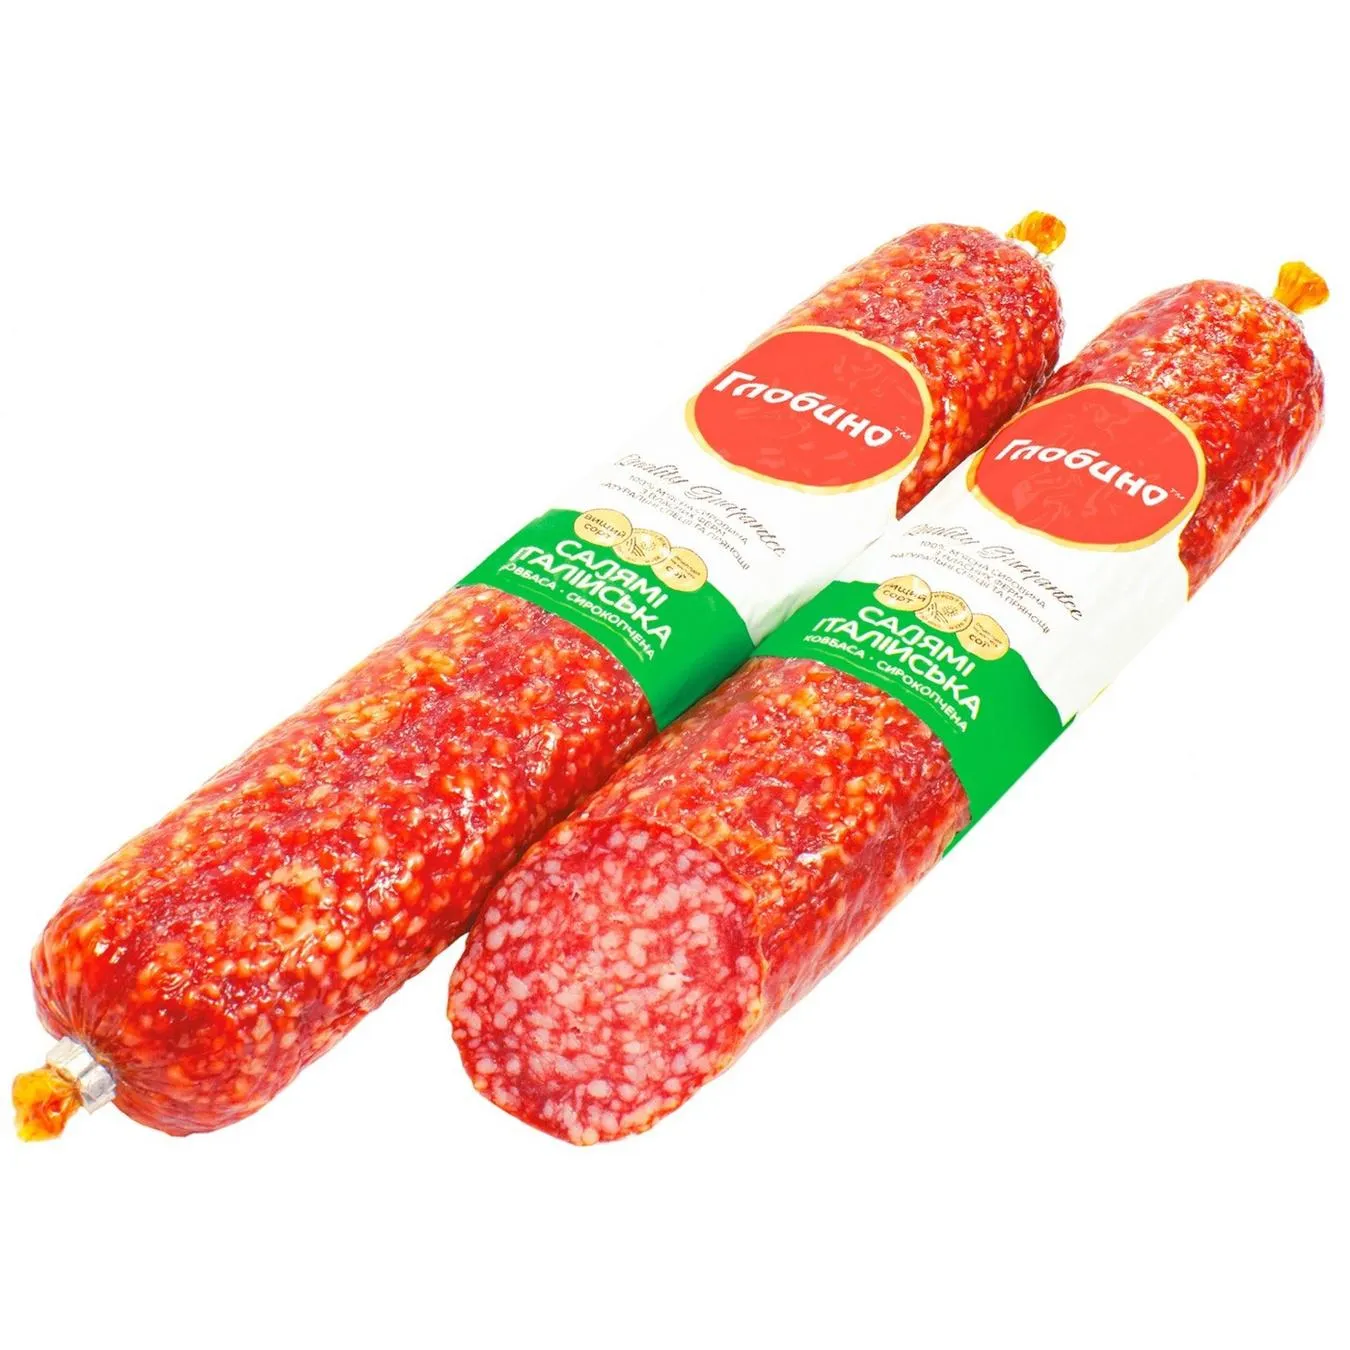 Sausage Globino salami Italian raw smoked 330g